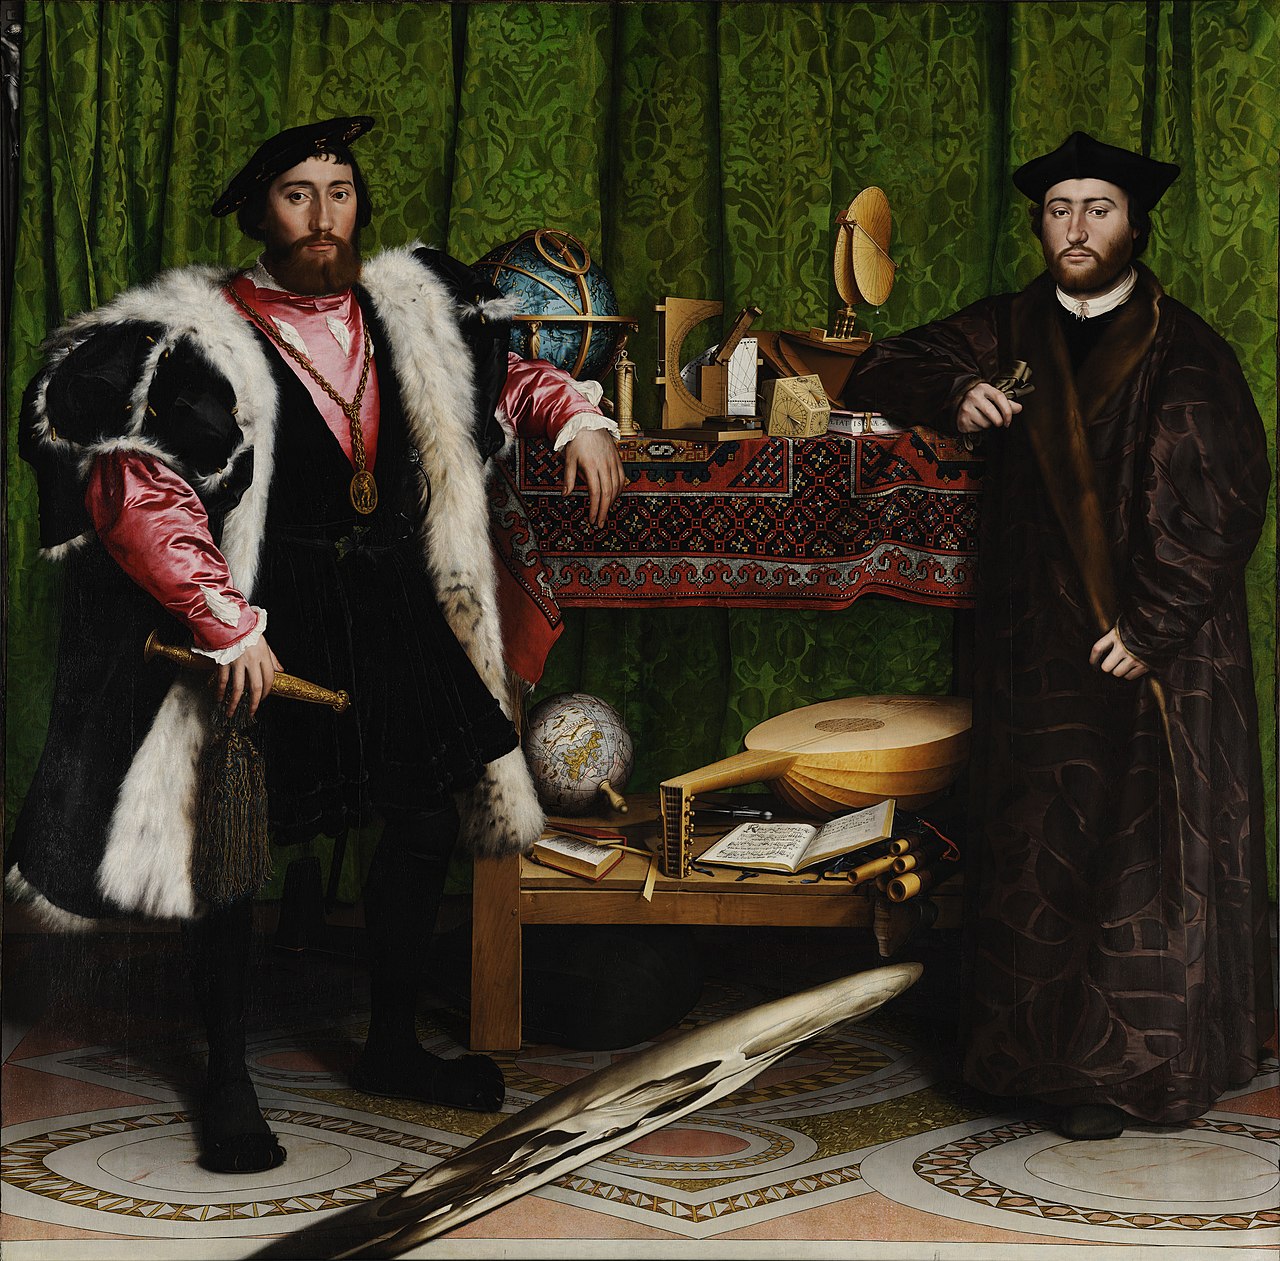 ホルバインの「大使たち」: Hans Holbein the Younger's The Ambassadors